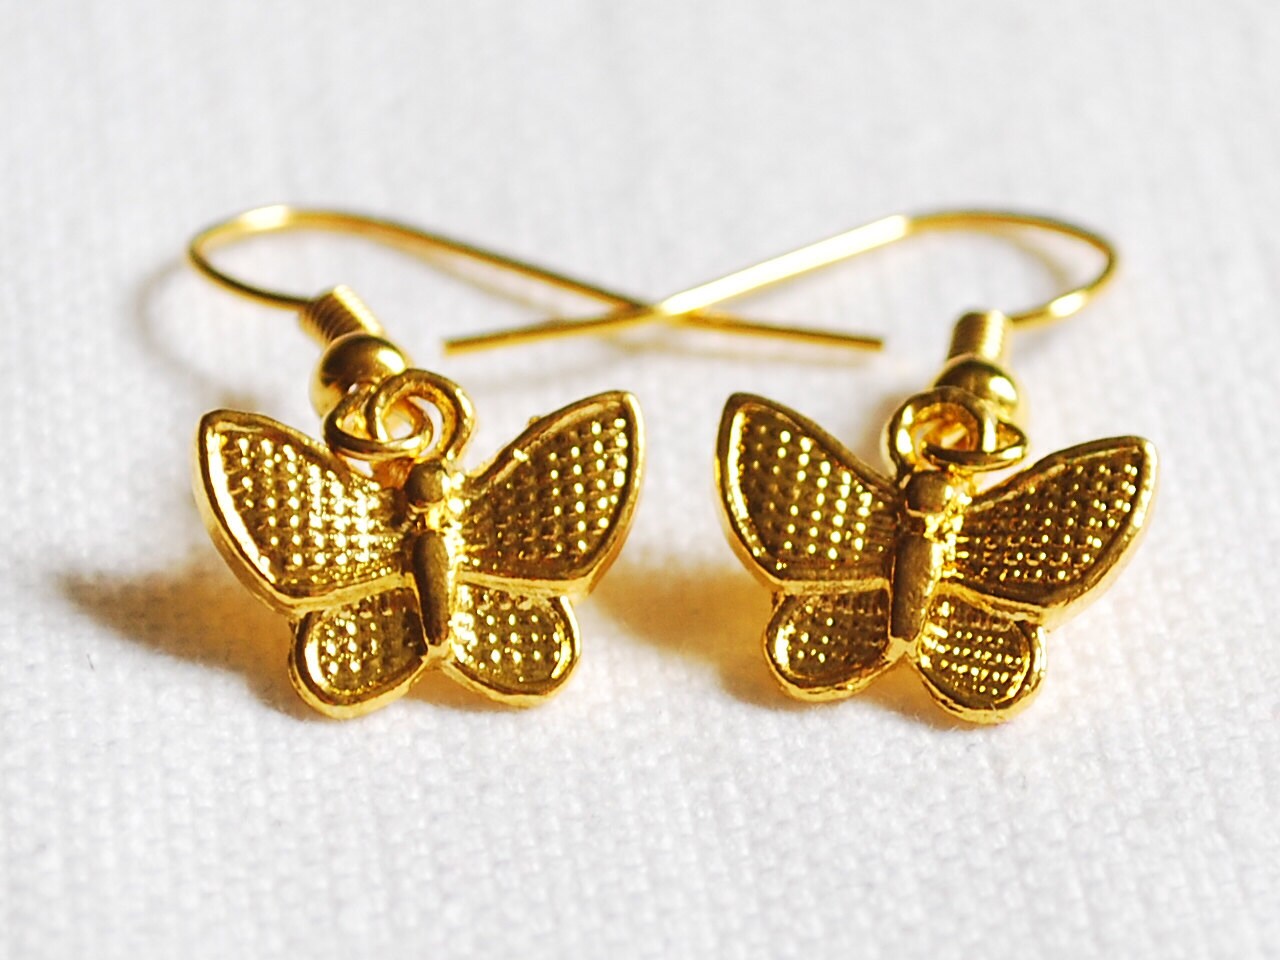 Gold butterfly earrings Gold earrings Insect jewellery